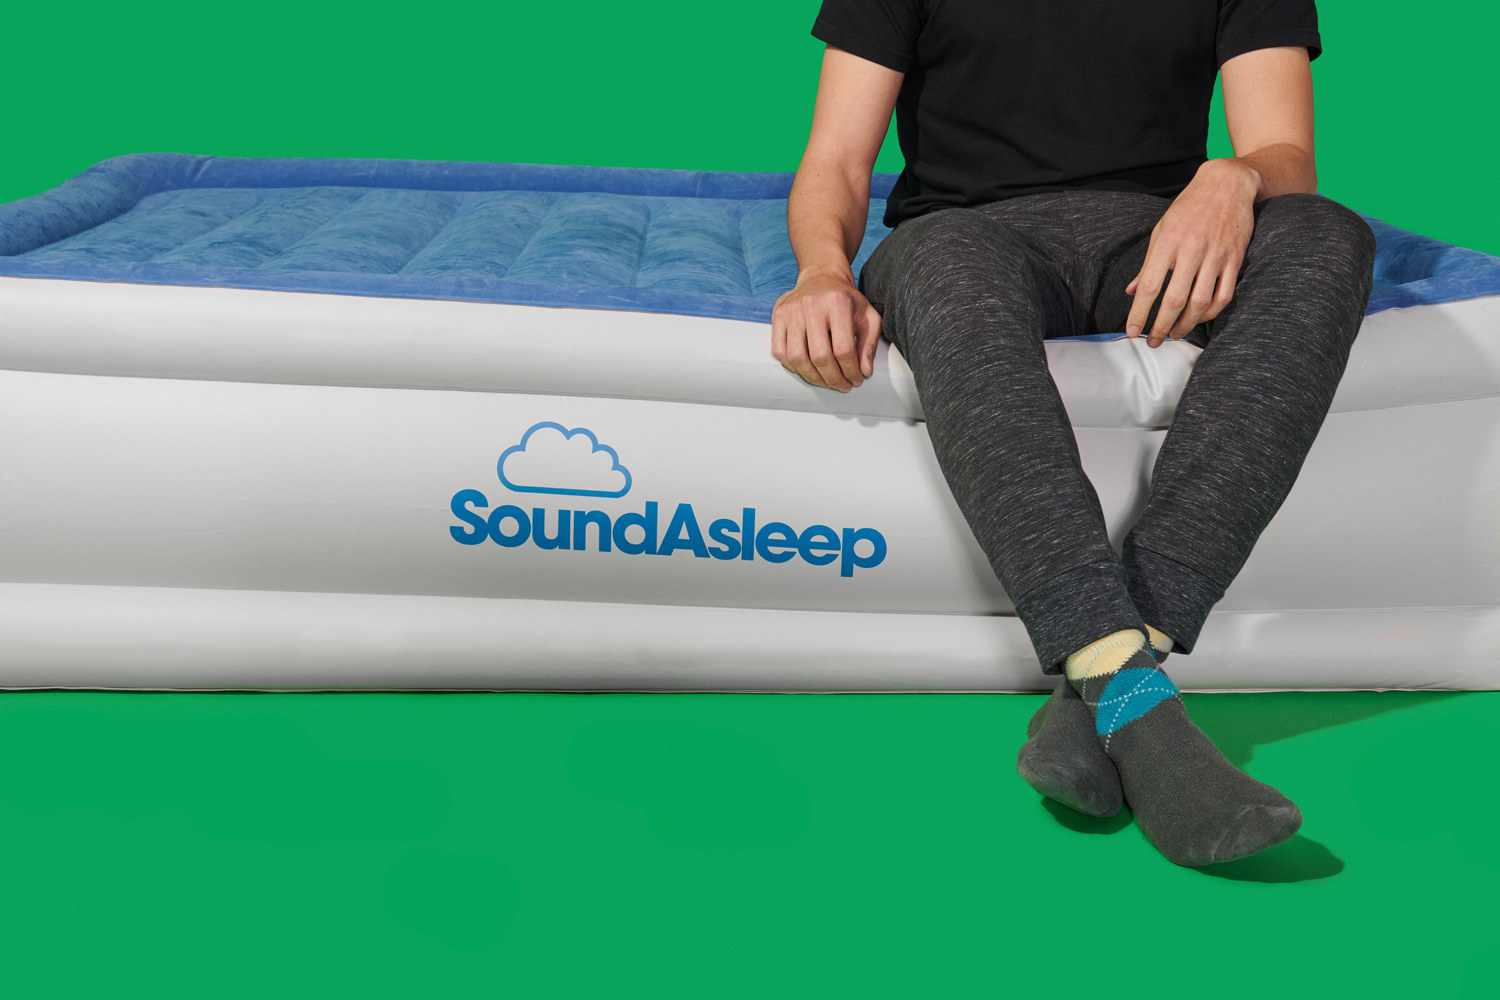 sound asleep air mattress full size